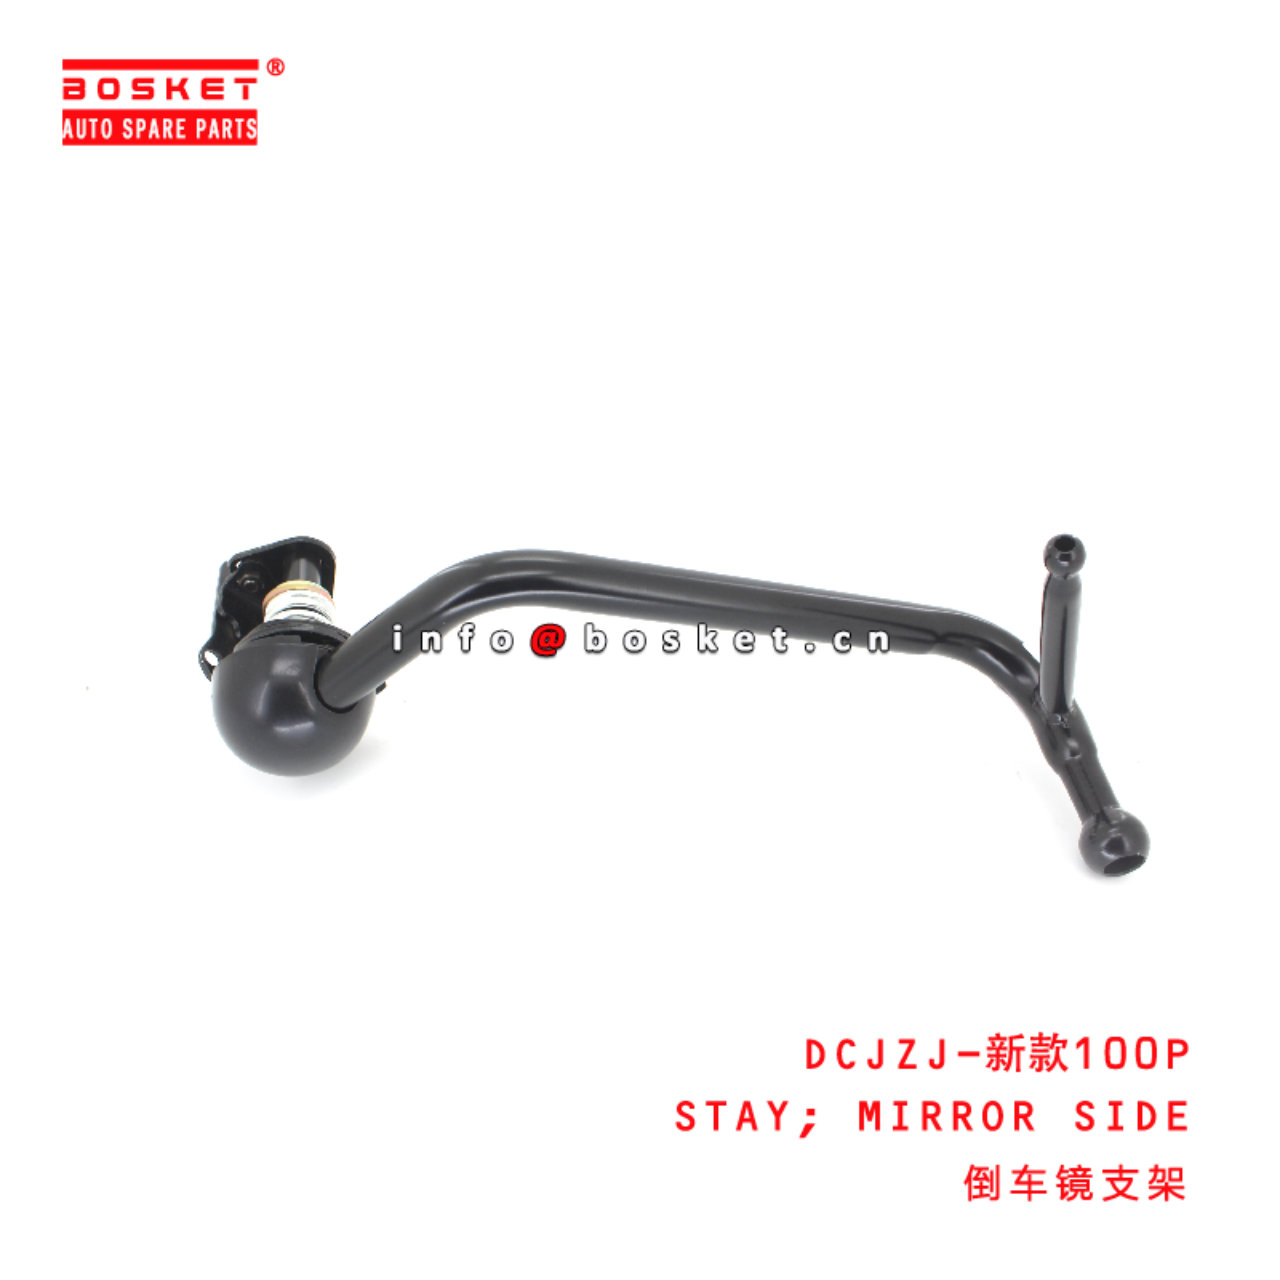 DCJZJ-新款100P Mirror Side Stay suitable for ISUZU...